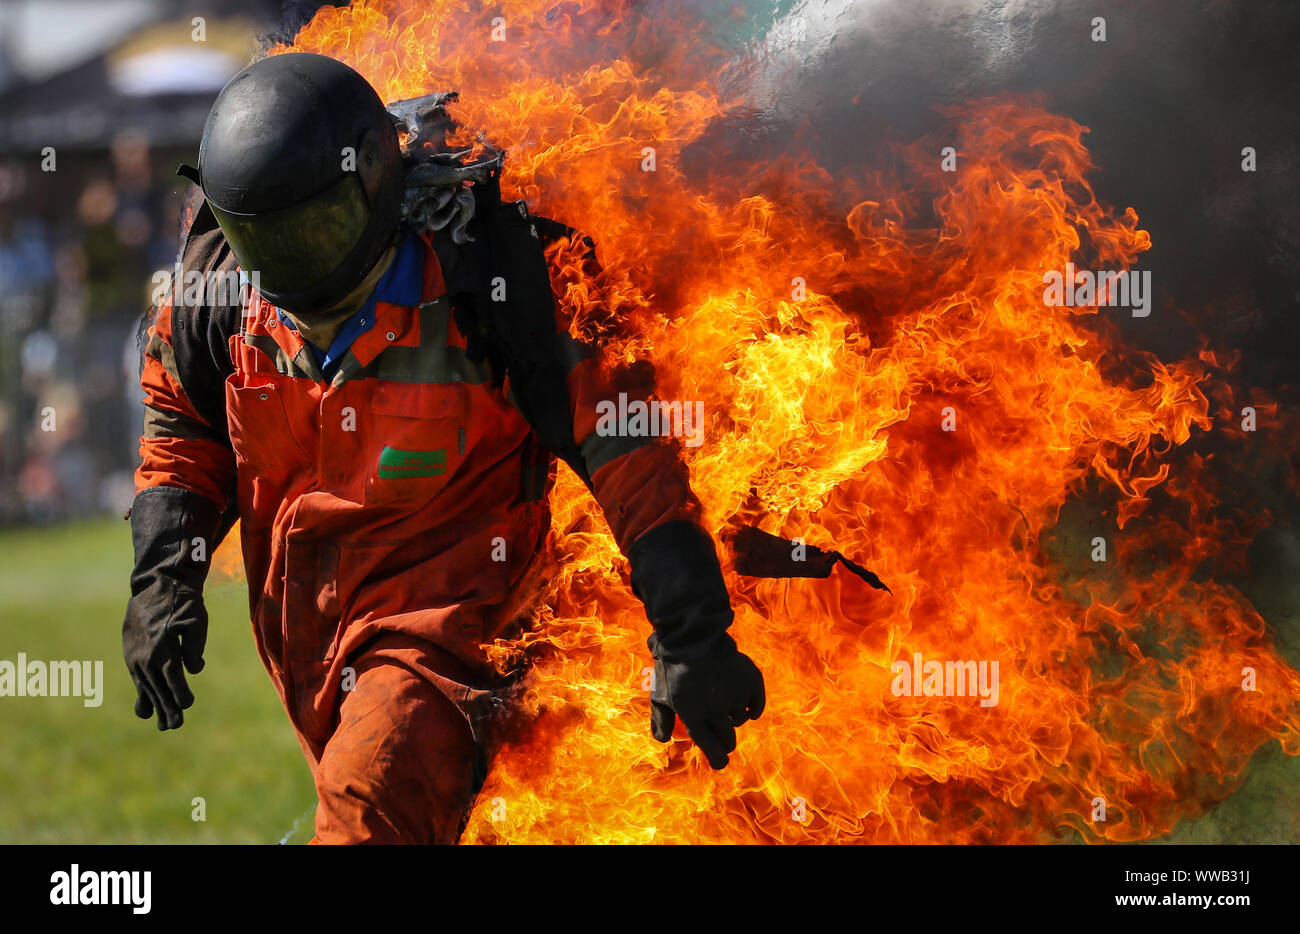 Uno Stuntman sul fuoco durante un display a un paese mostra nel Regno Unito Foto Stock